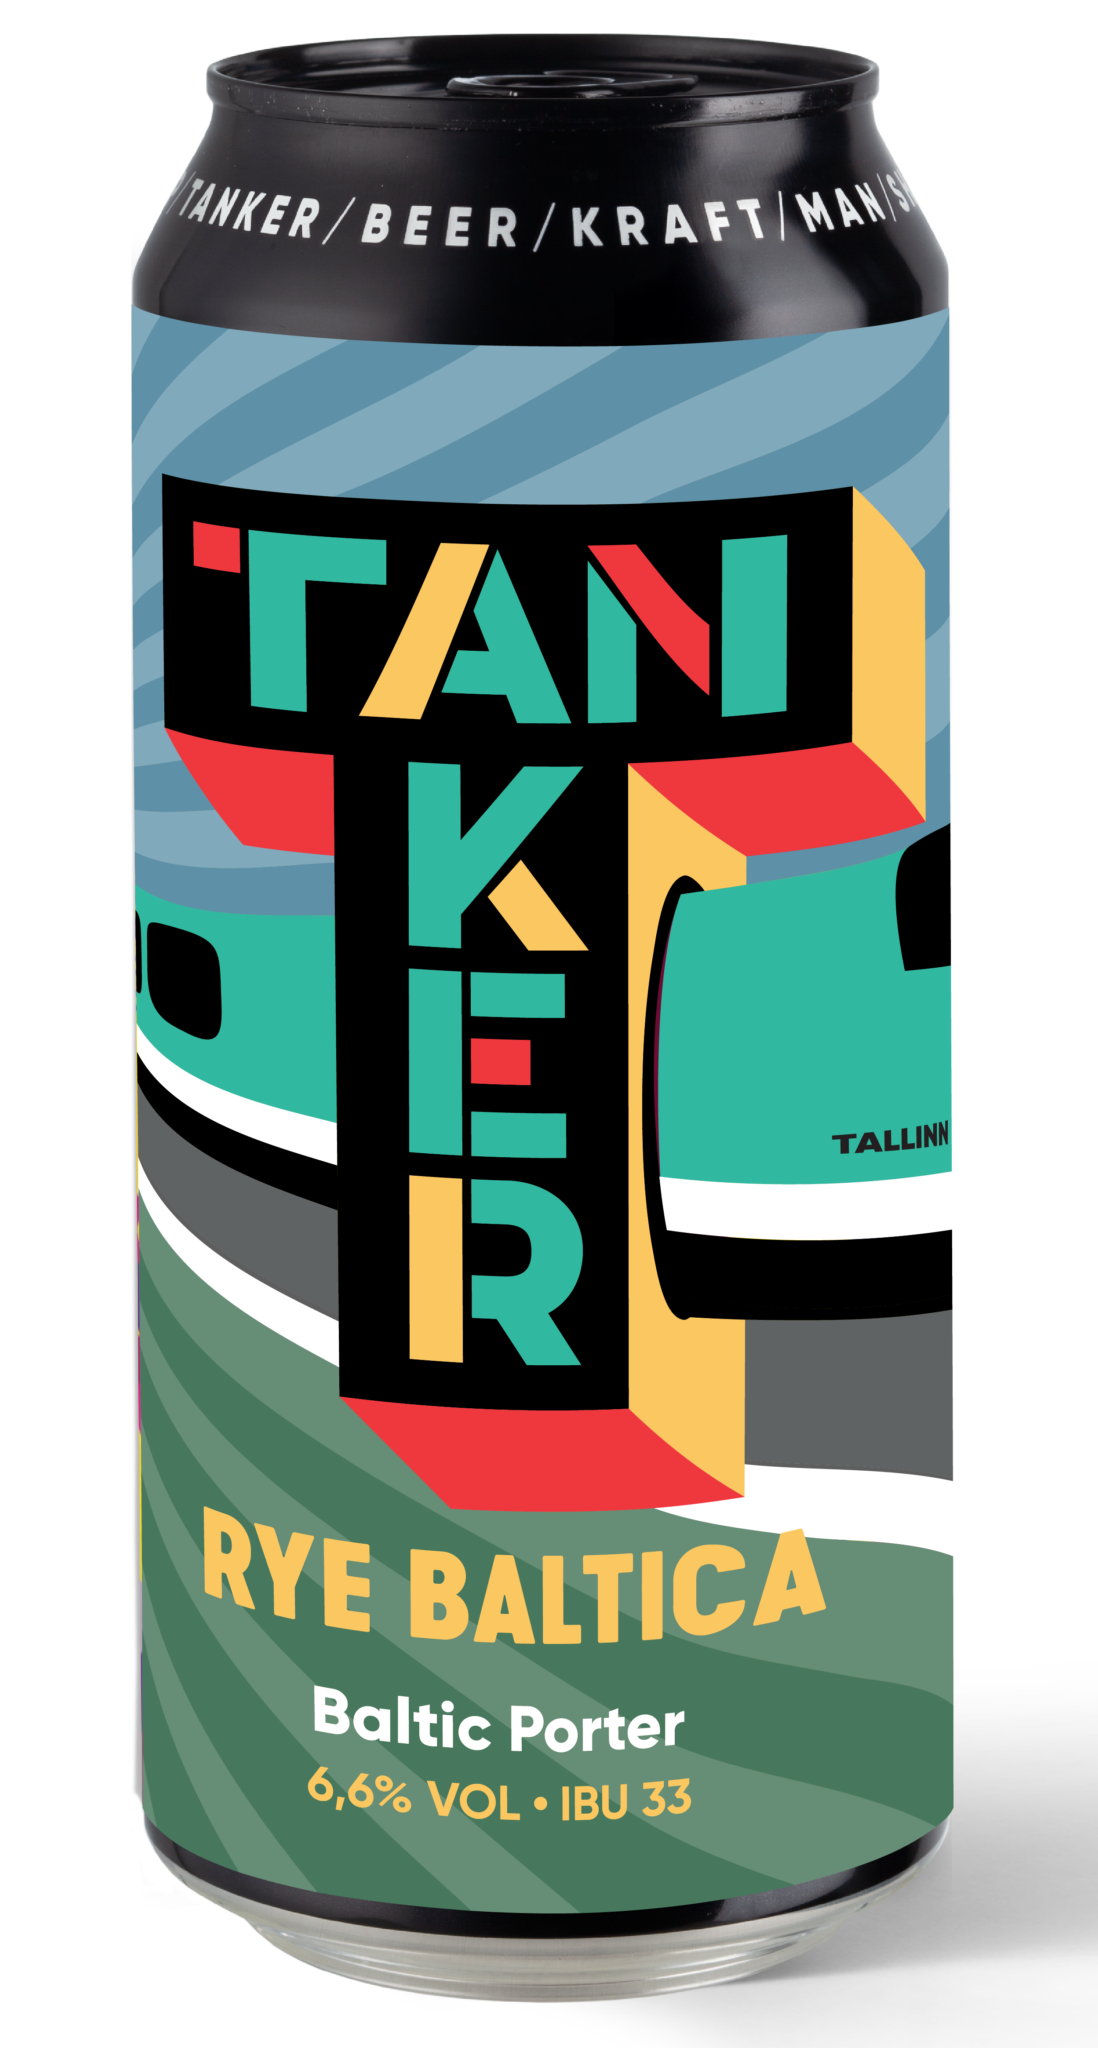 Produktbild von Tanker Brewery - Rye Baltica